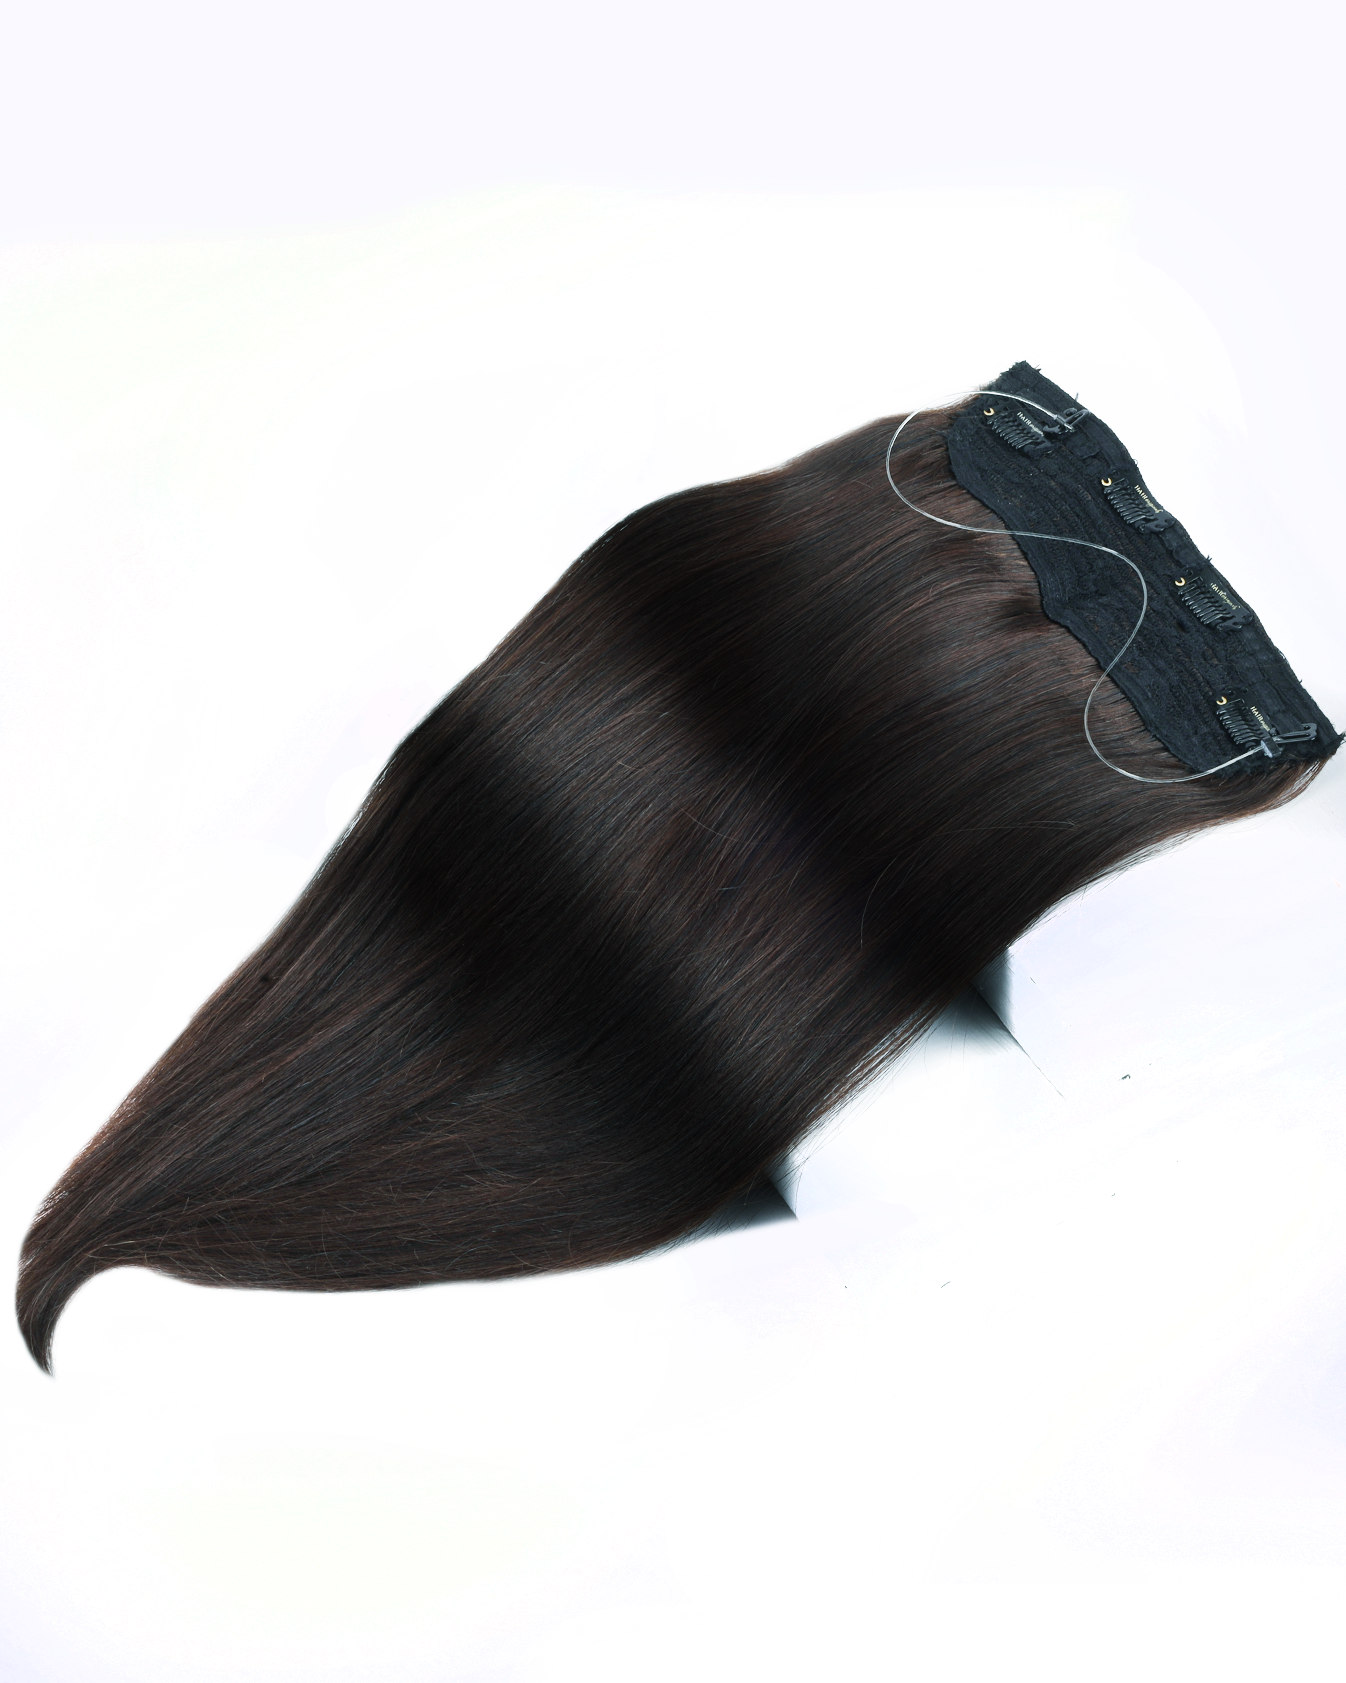 Halo Hair Extensions  HairOriginals Natural Black Wavy 20 Inch